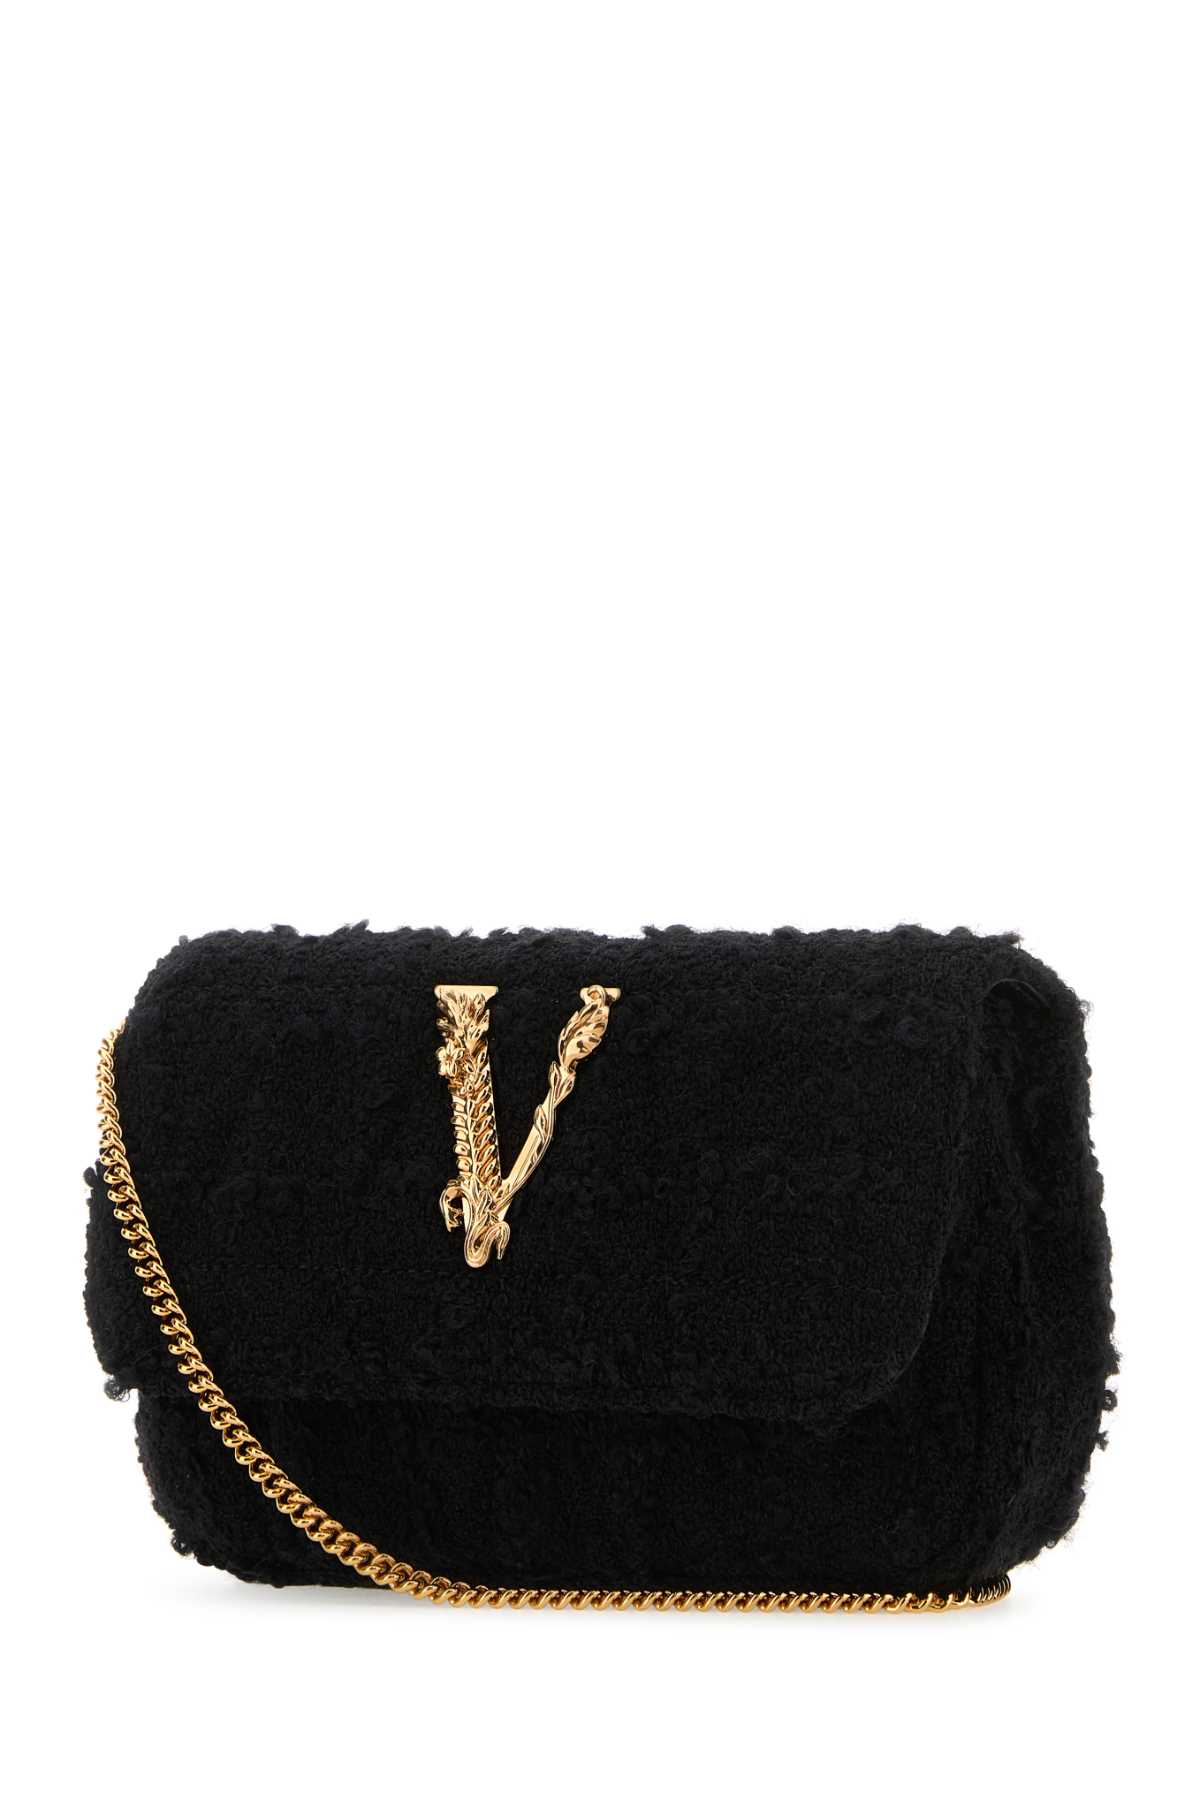 Versace Black Fabric Mini Virtus Clutch In Blackgold